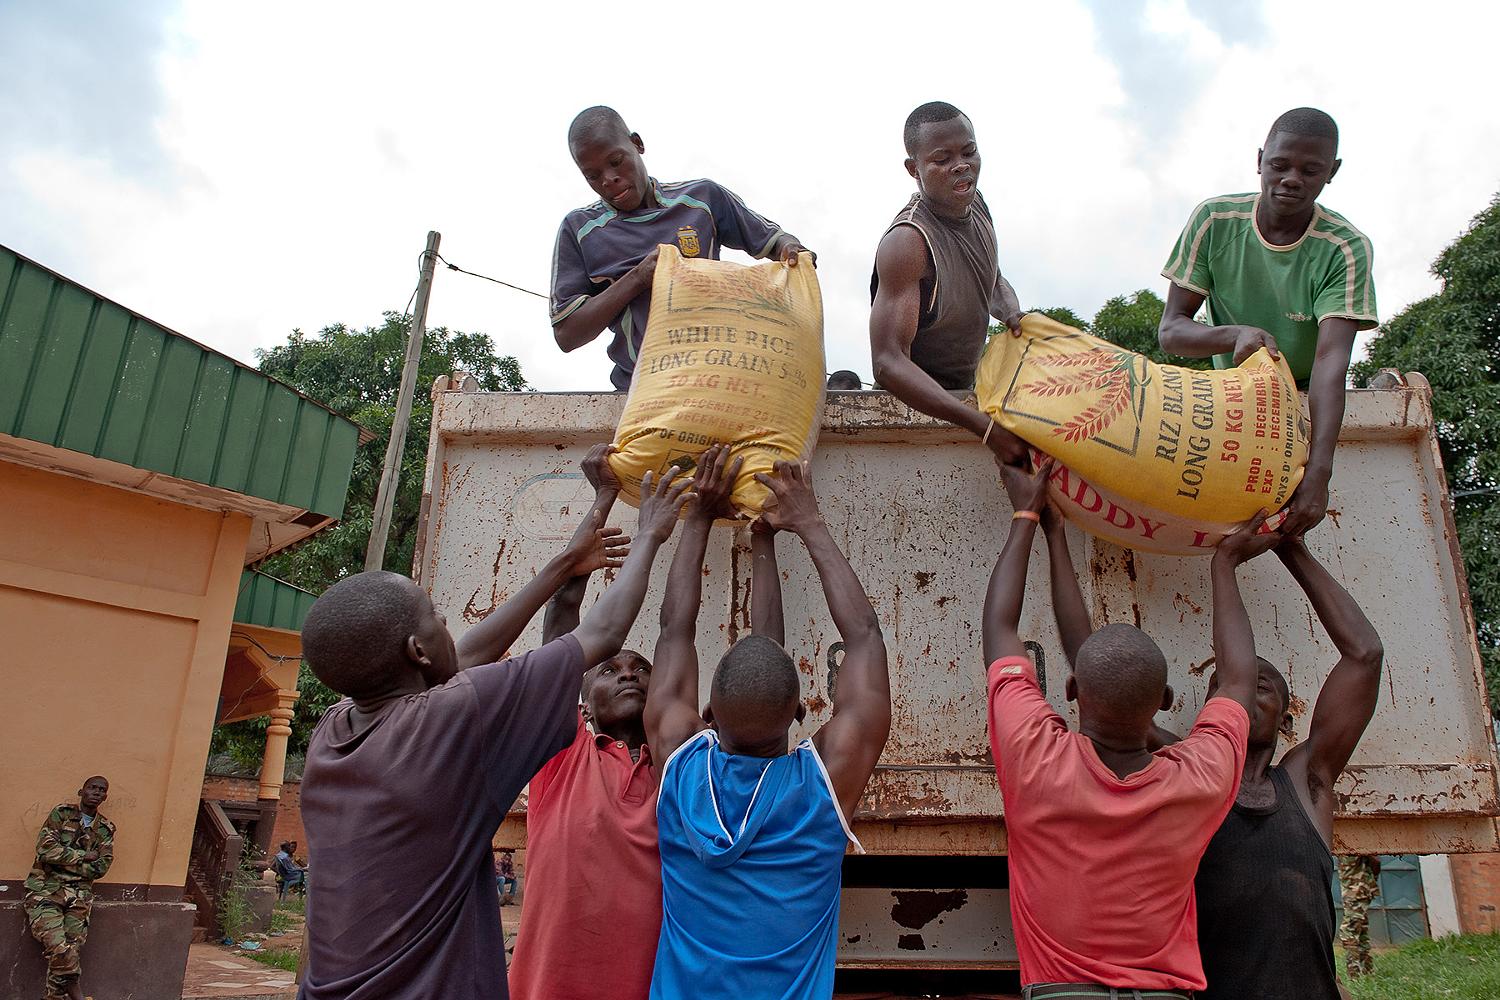 Die Sicherheitsorganisation UNIT der UN in der Zentralafrikanischen Republik Republik koordiniert eine wöchentliche Essensausgabe an mehr als 2.000 ex-Seleka Kämpfer in drei Camps in Bangui (alle Fotos: UN Photo/Catianne Tijerina)